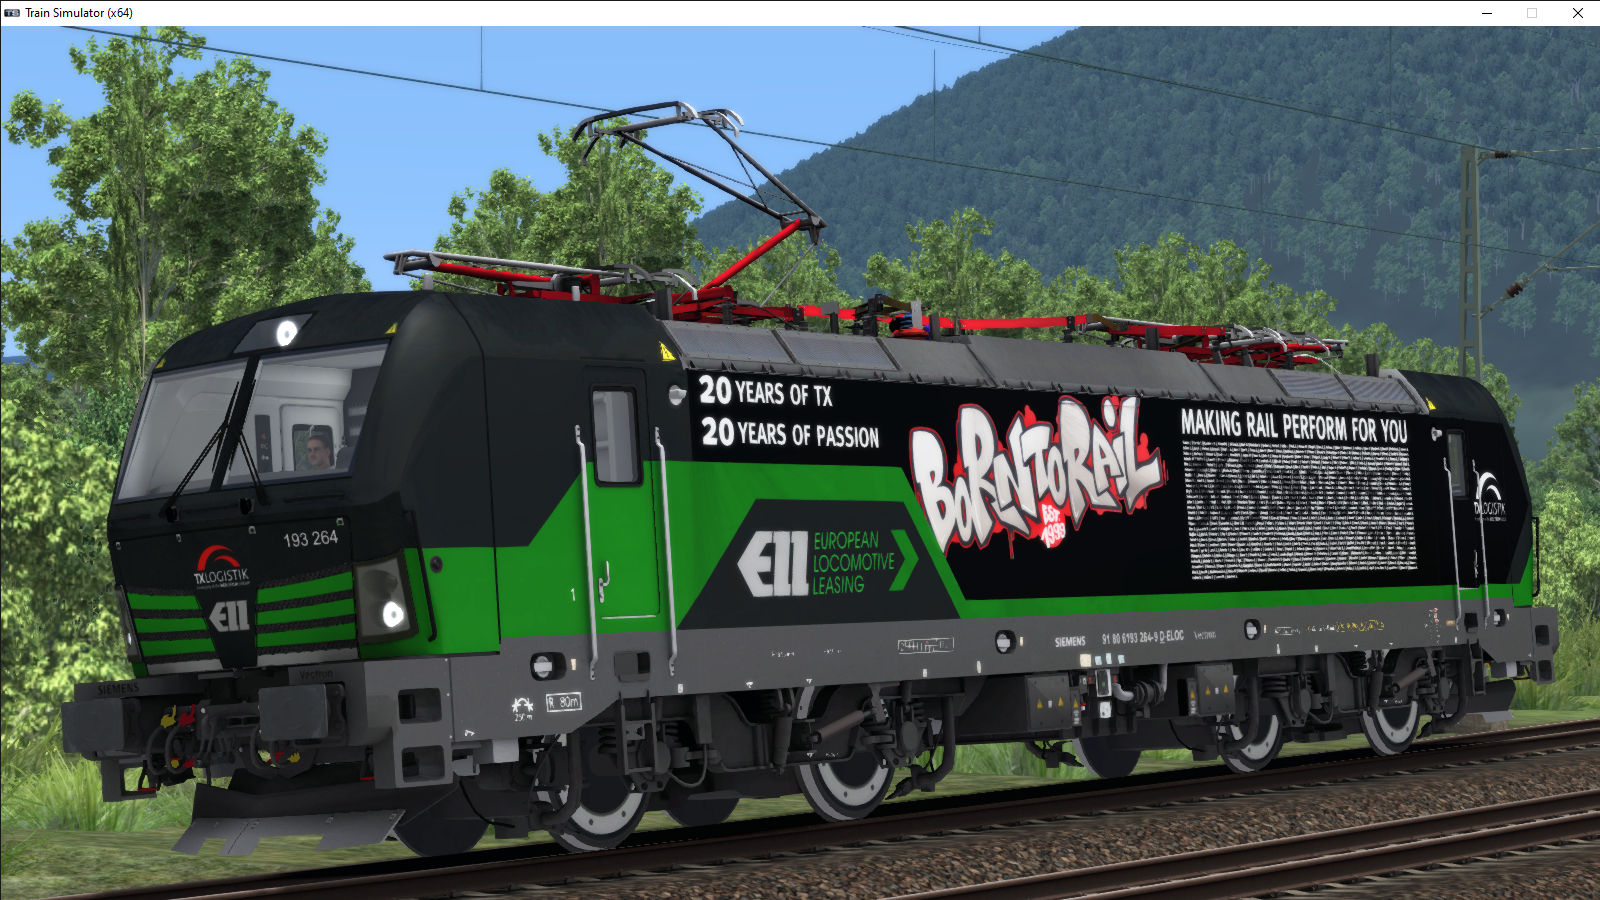 TXL 193 264 Born to Rail -  - Die deutsche Train